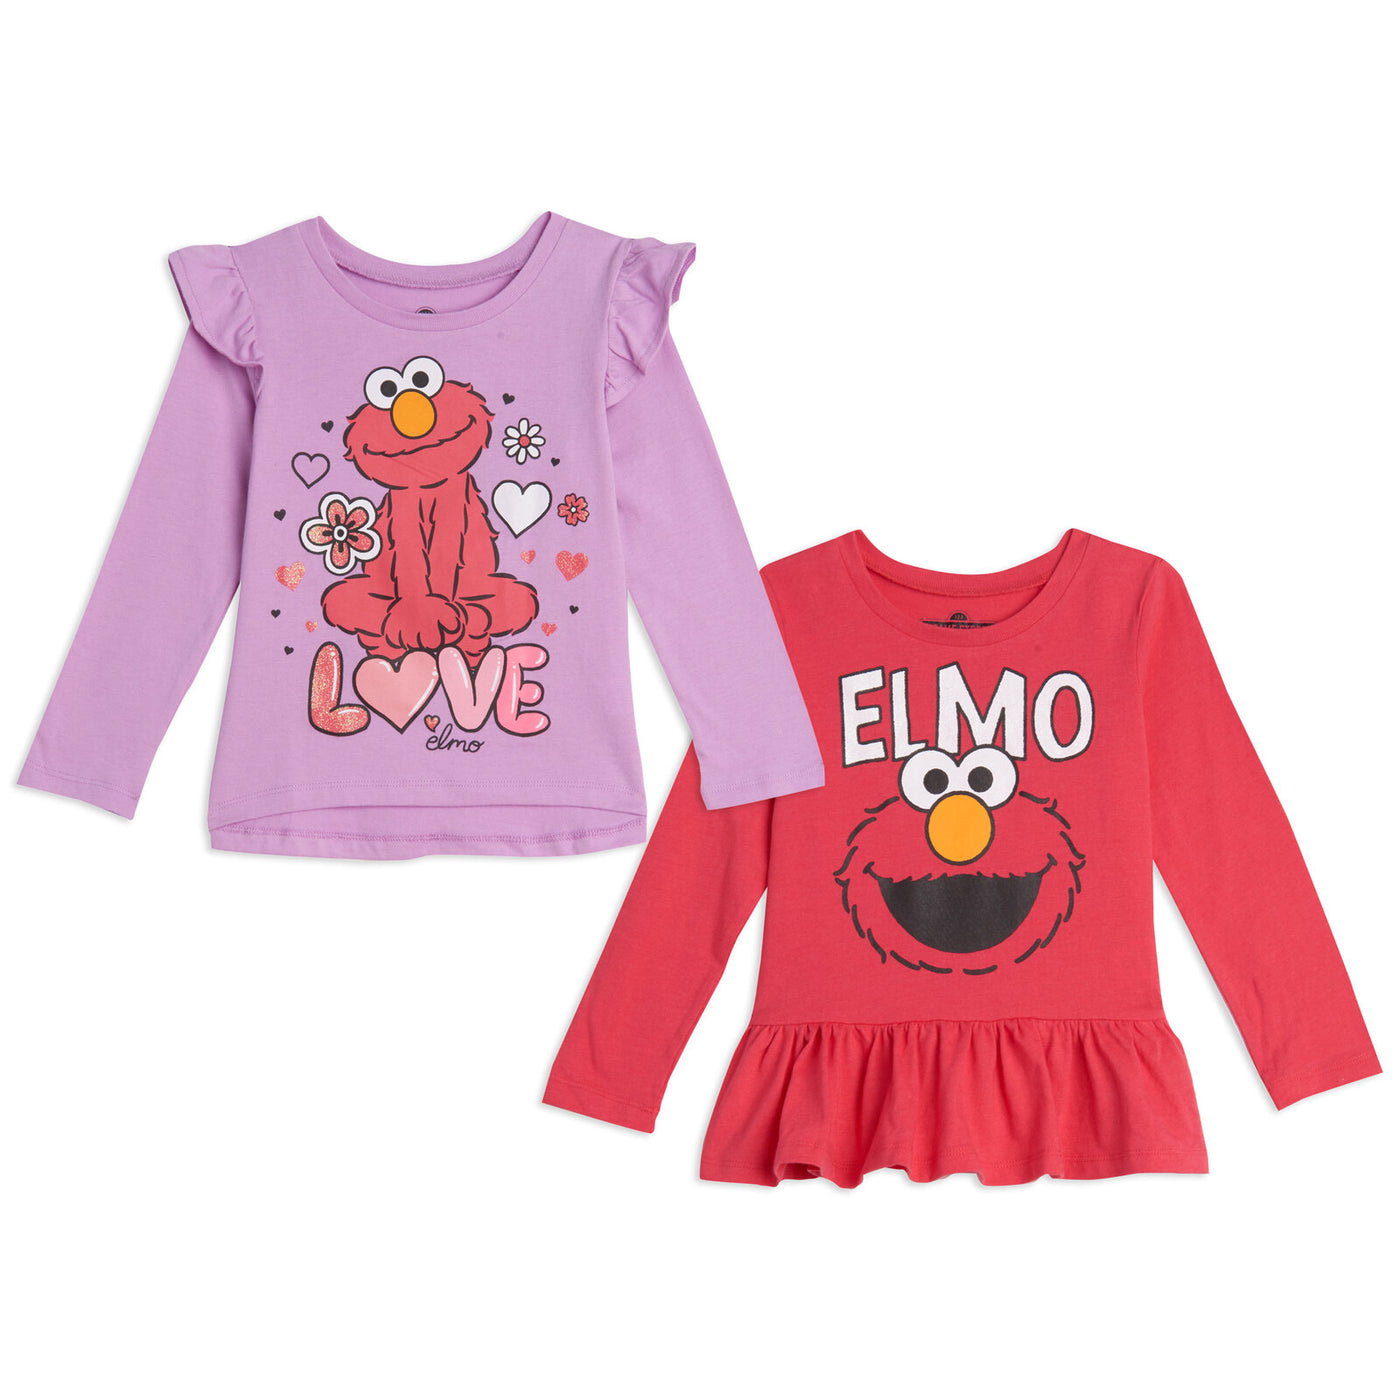 Barrio Sésamo Elmo paquete de 2 camisetas gráficas de manga larga con volantes